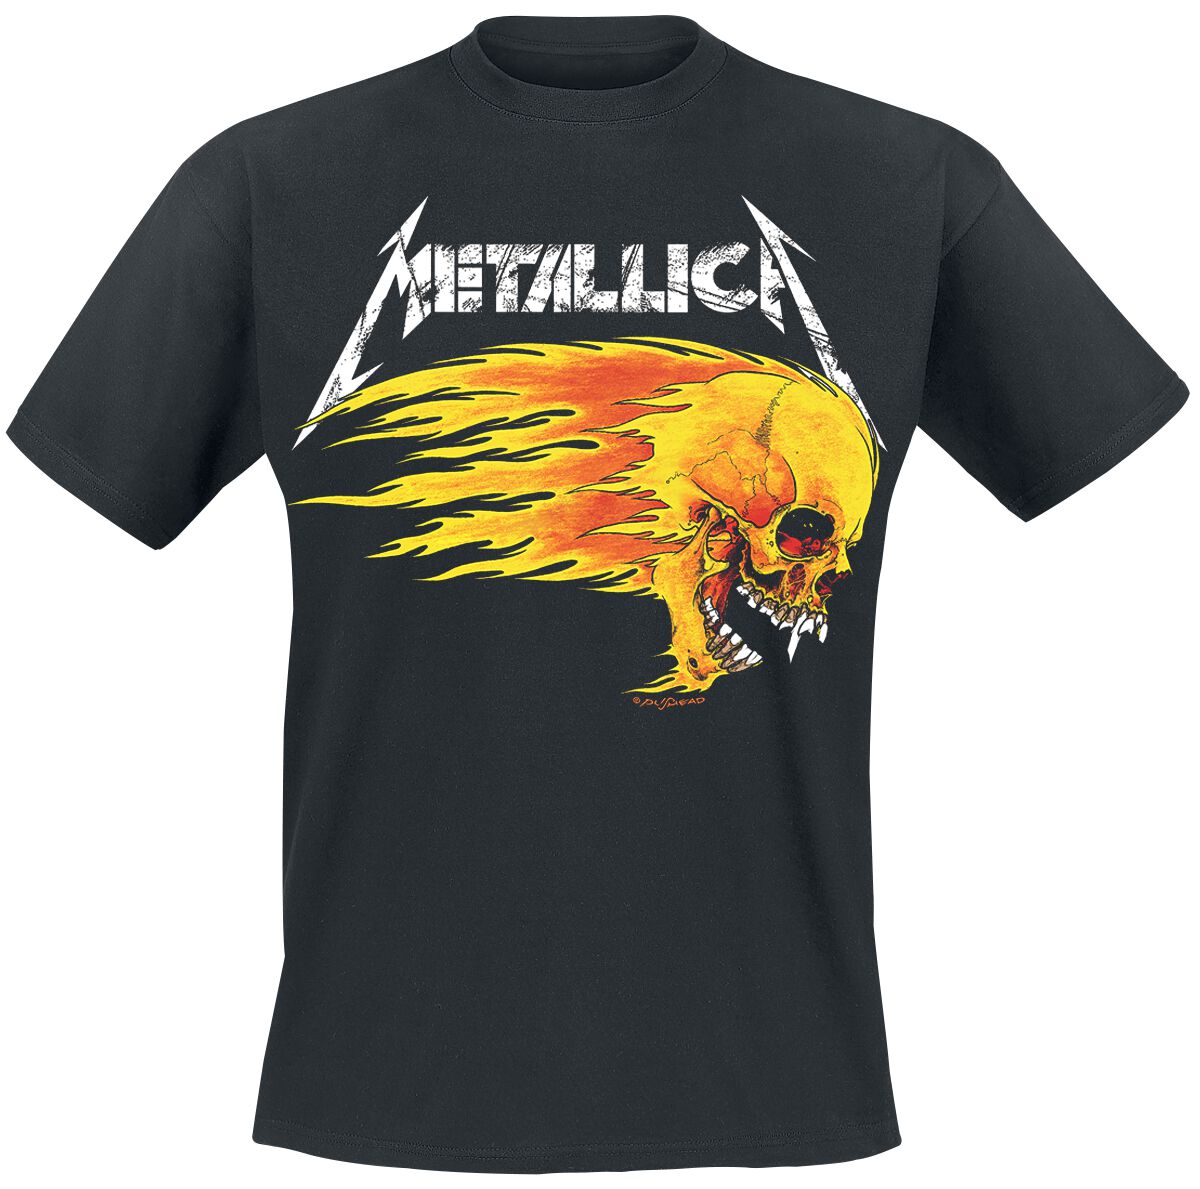 Metallica T-Shirt - Flaming Skull Tour Tee - S bis 5XL - für Männer - Größe M - schwarz  - Lizenziertes Merchandise!